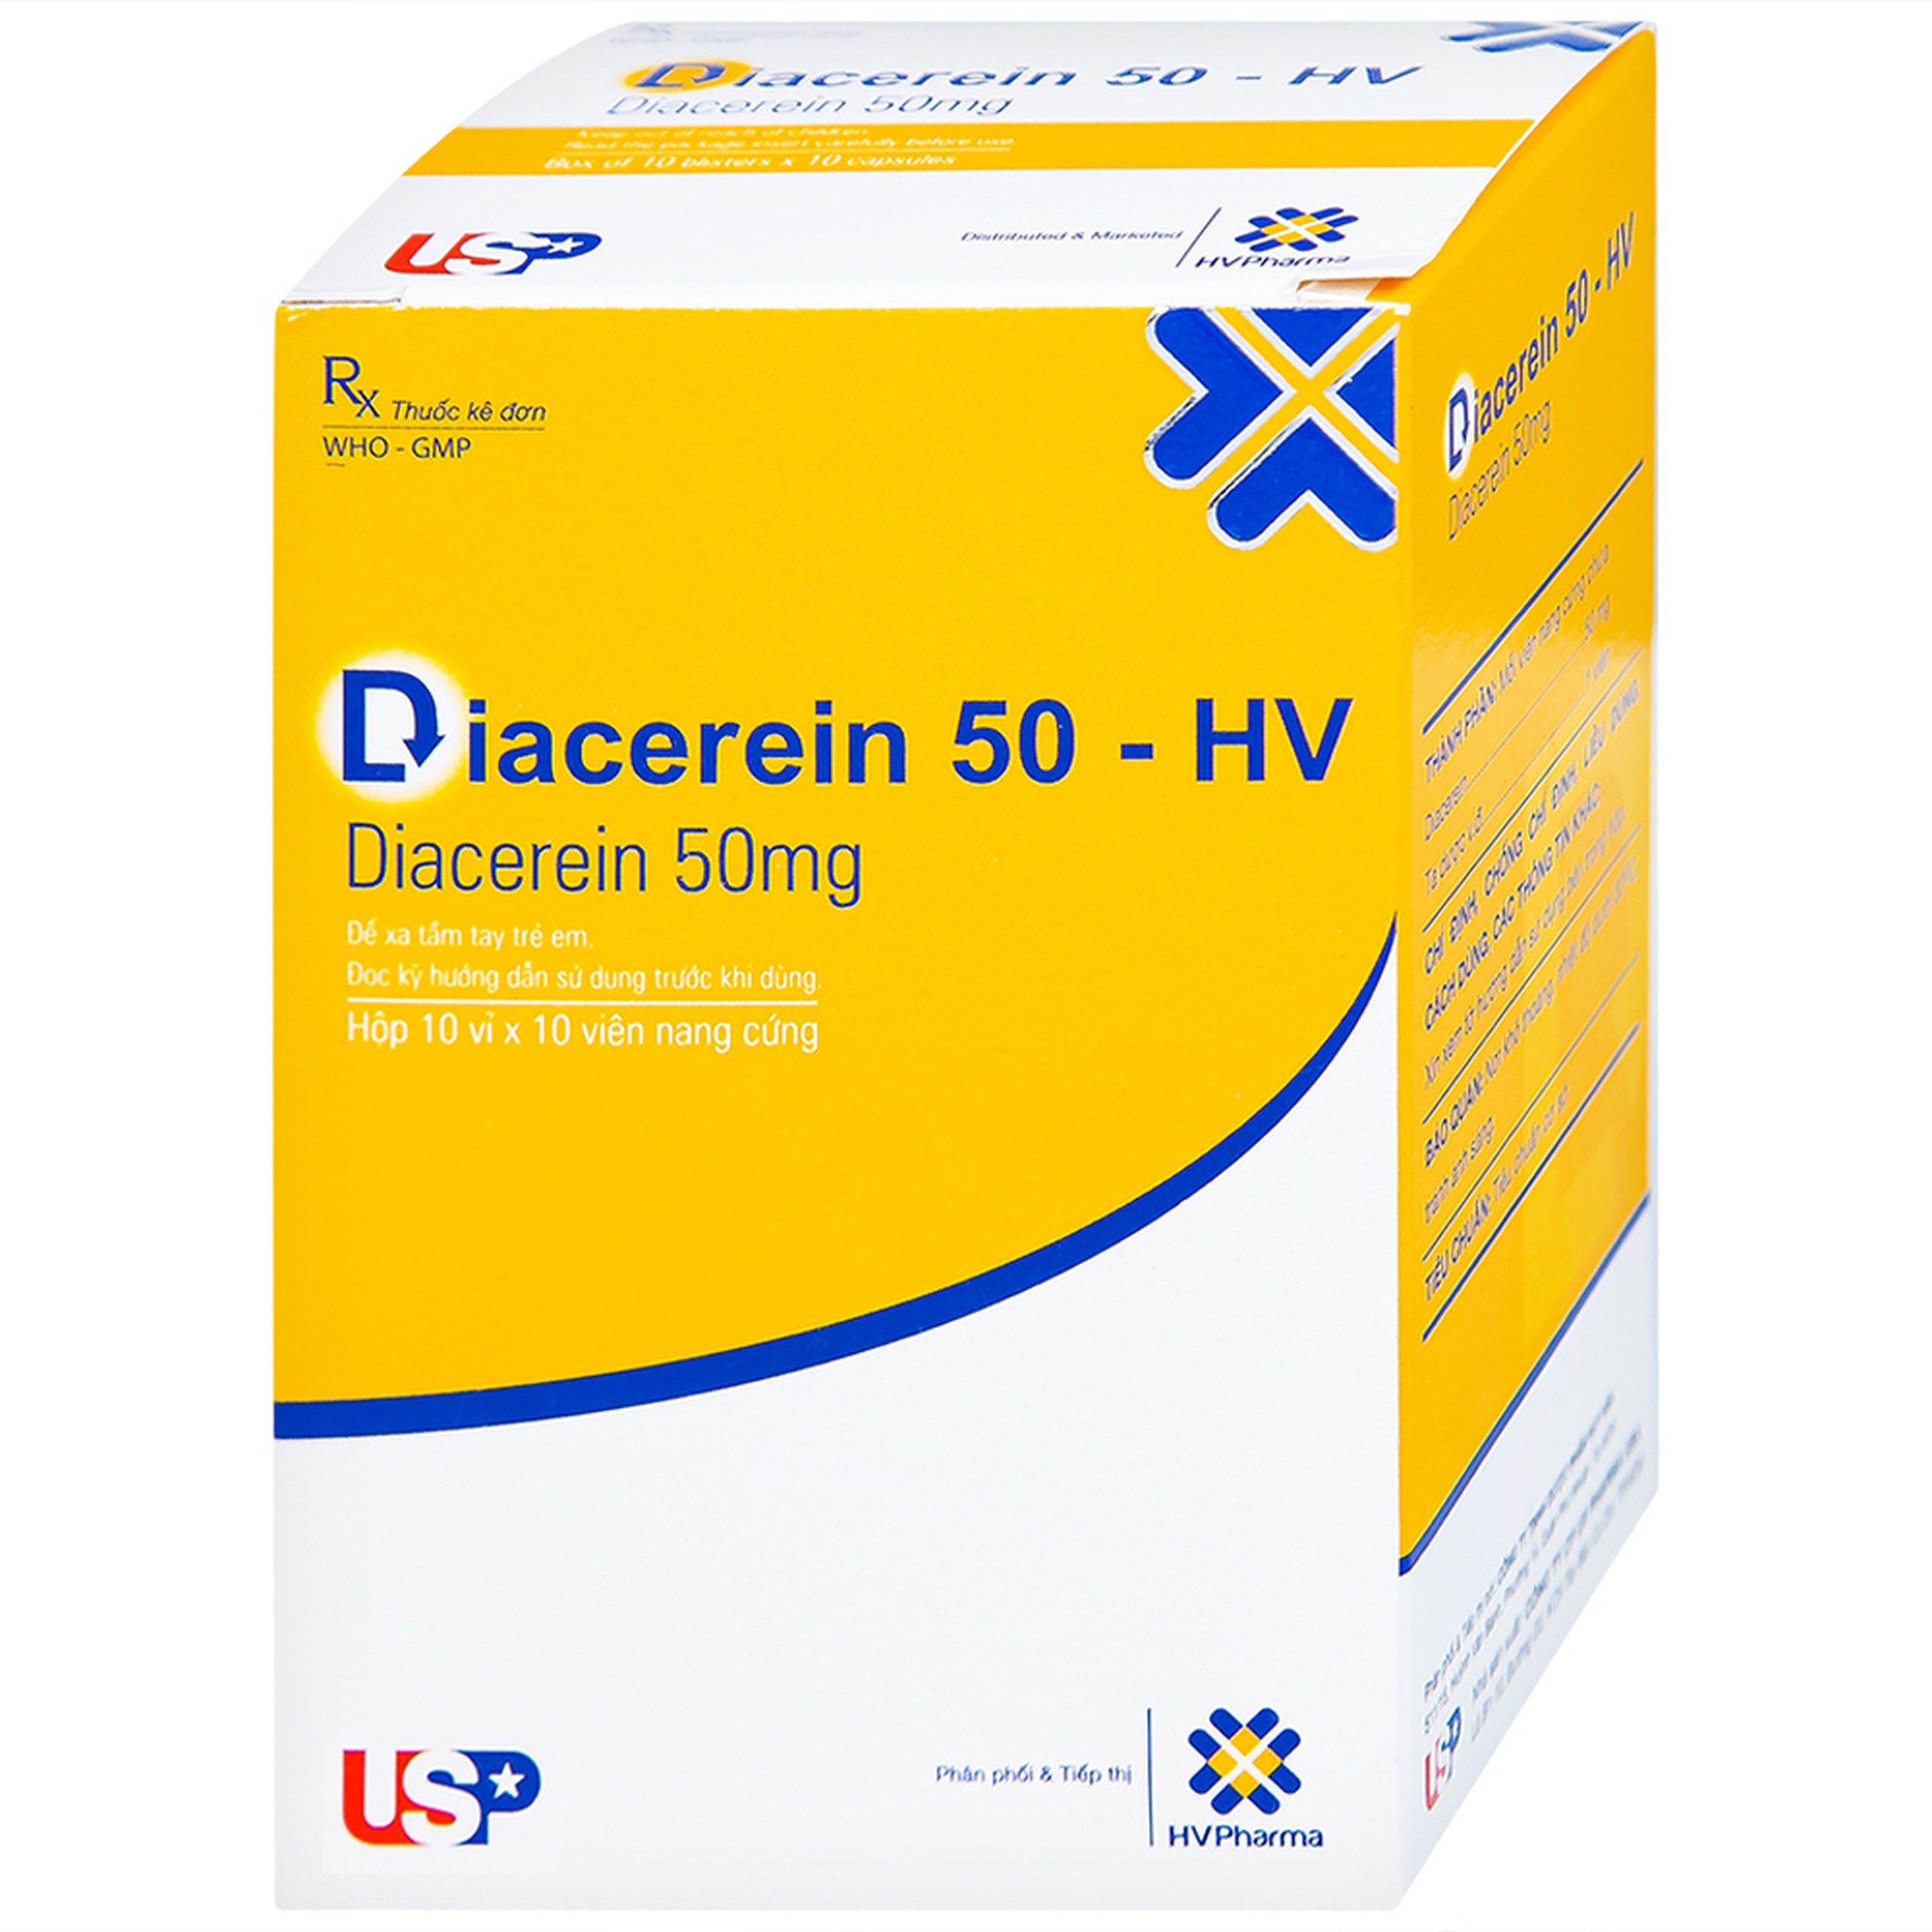 Thuốc Diacerein 50 - HV USP điều trị các bệnh thoái hóa khớp (10 vỉ x 10 viên)